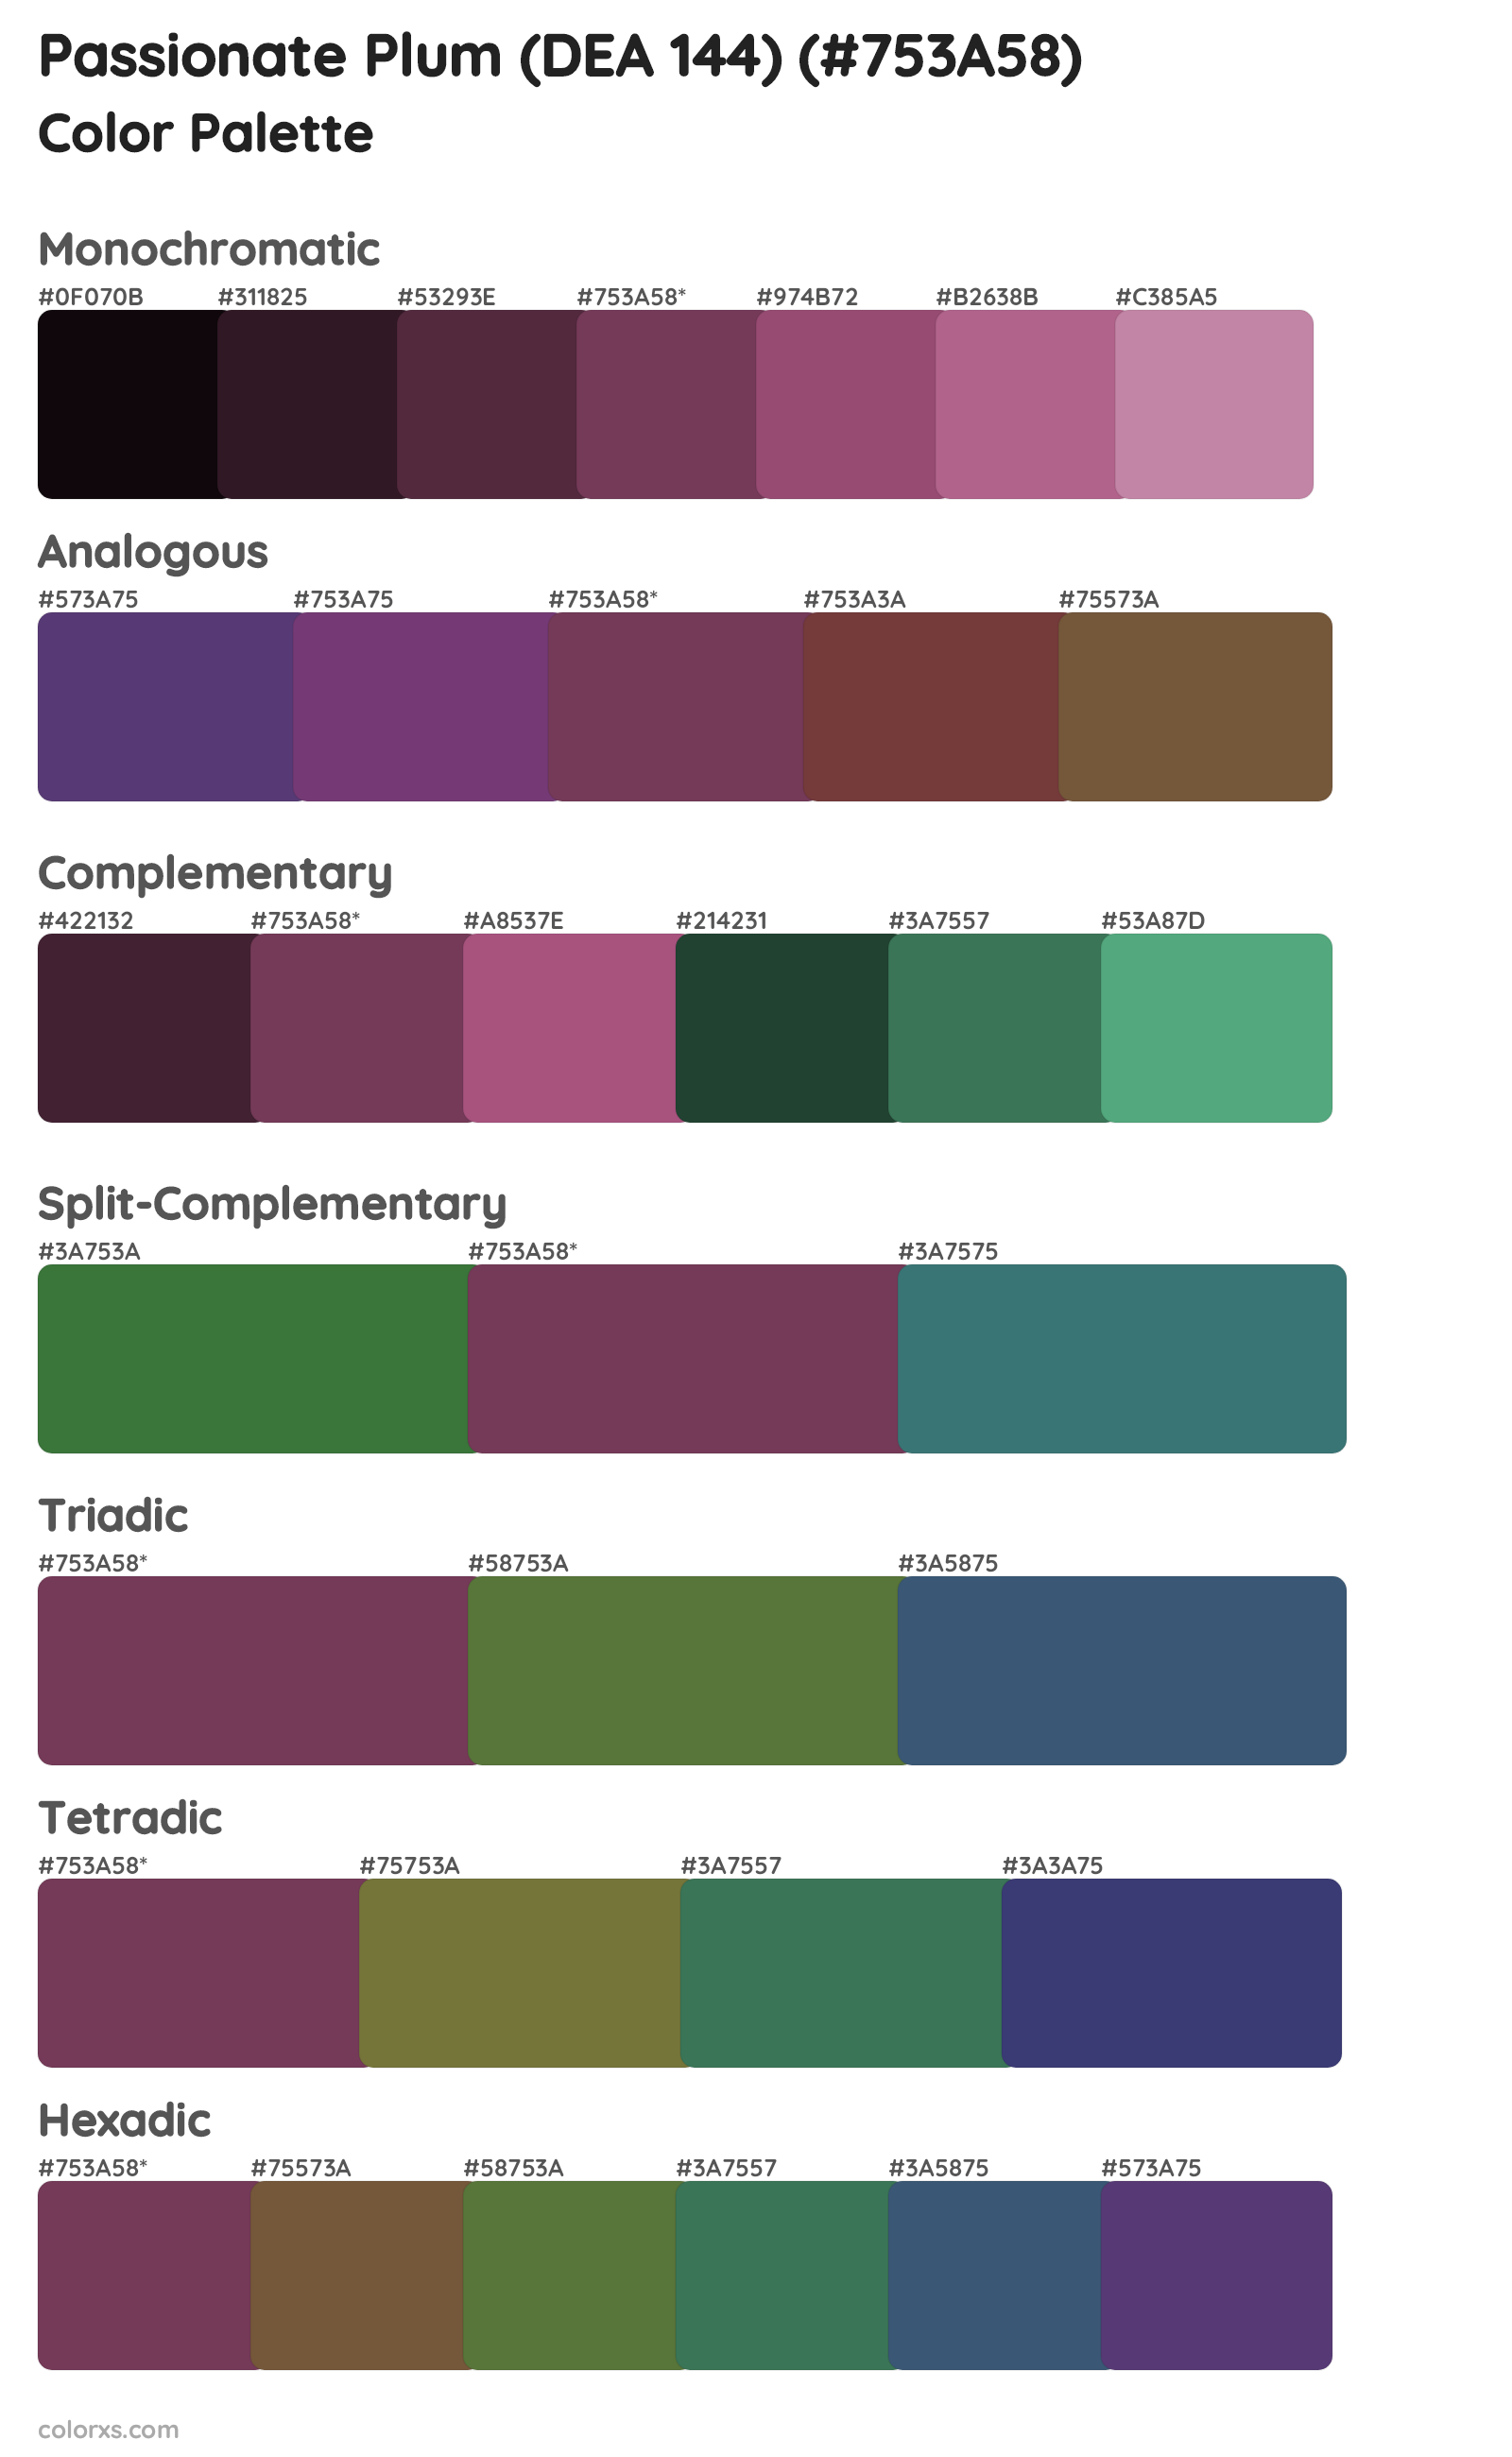 Passionate Plum (DEA 144) Color Scheme Palettes